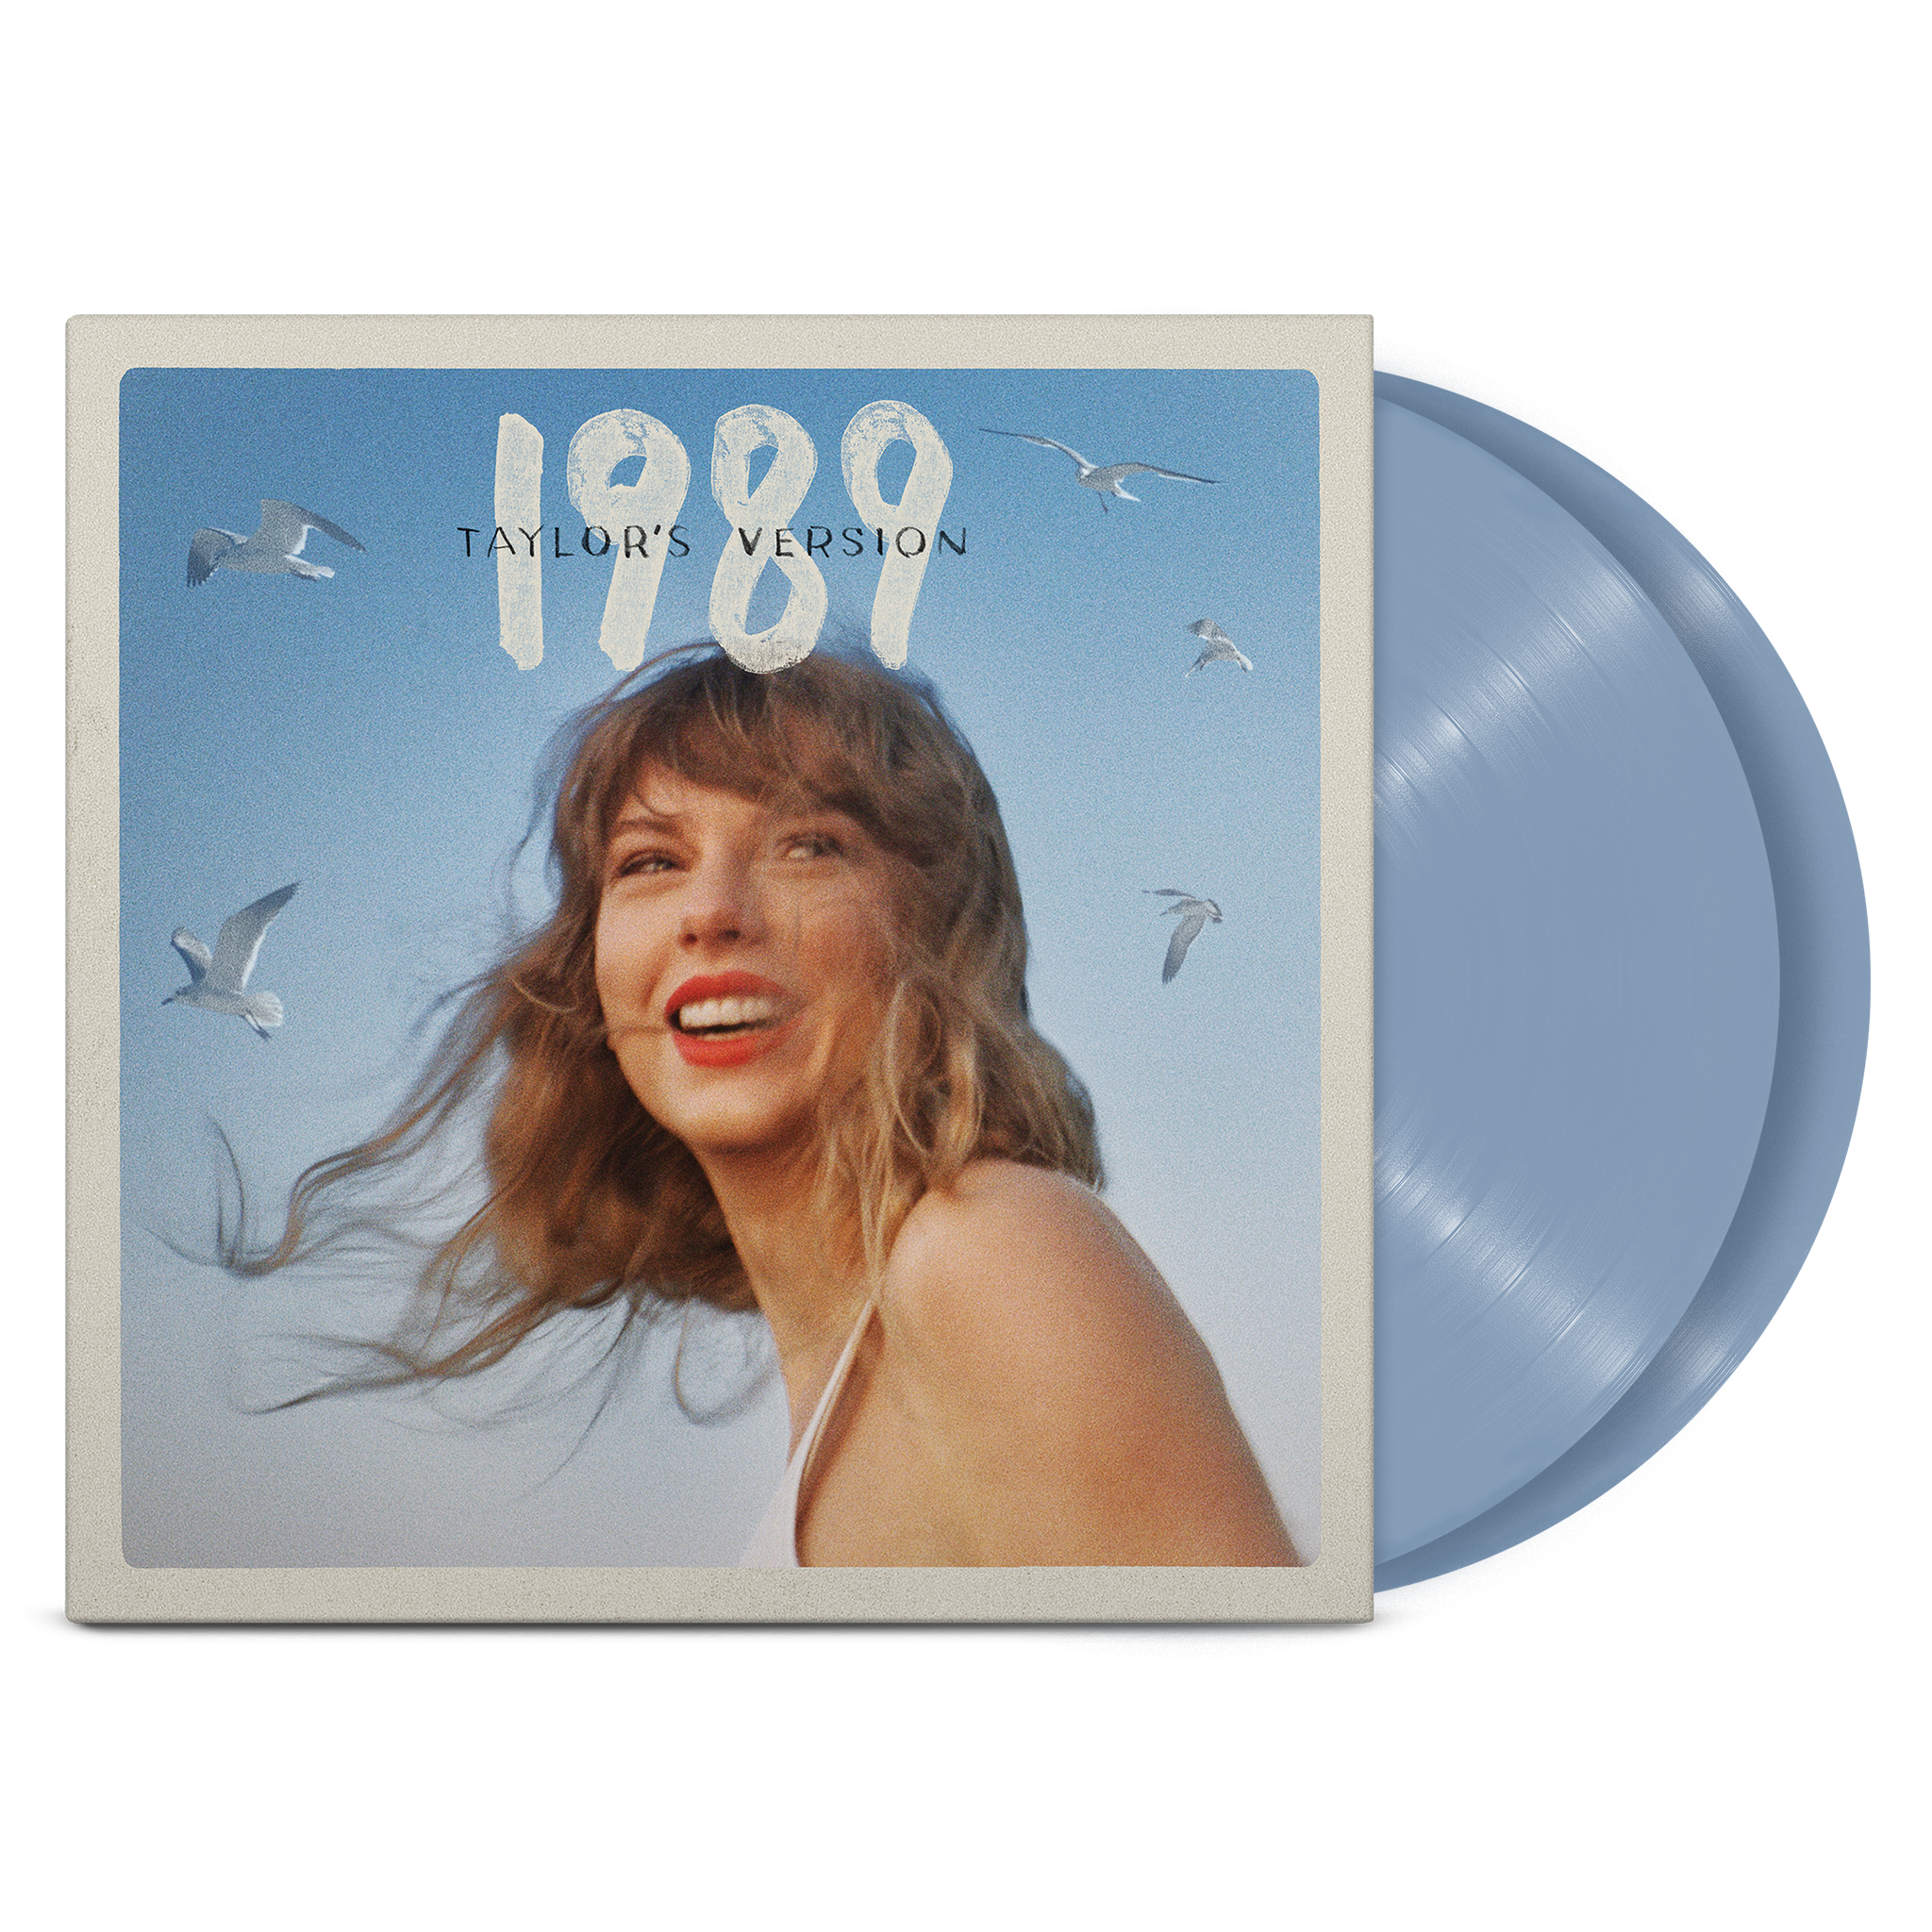 https://images.bravado.de/prod/product-assets/product-asset-data/taylor-swift/taylor-swift/products/504432/web/397076/image-thumb__397076__3000x3000_original/Taylor-Swift-1989-Taylor-s-Version-Vinyl-Album-Crystal-Skies-Blue-504432-397076.png